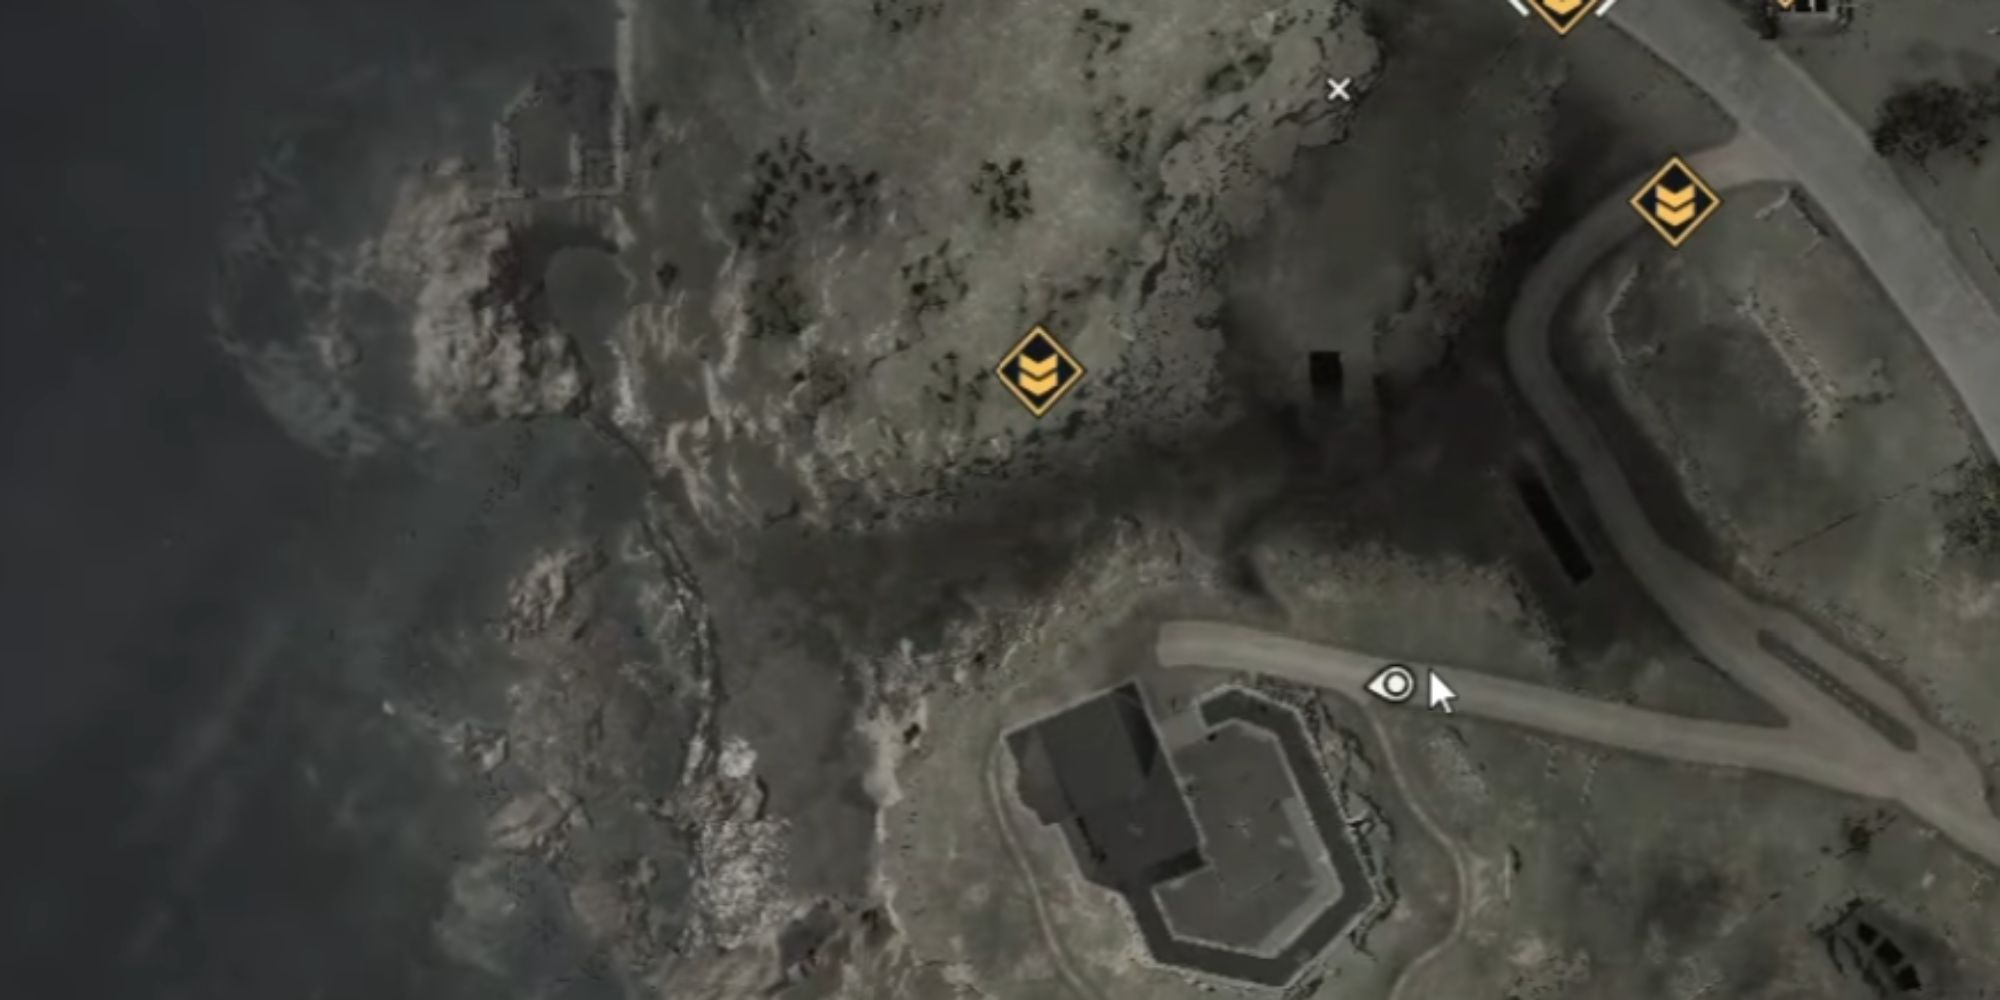 Sniper Elite 5 Secret Entrance On The Map